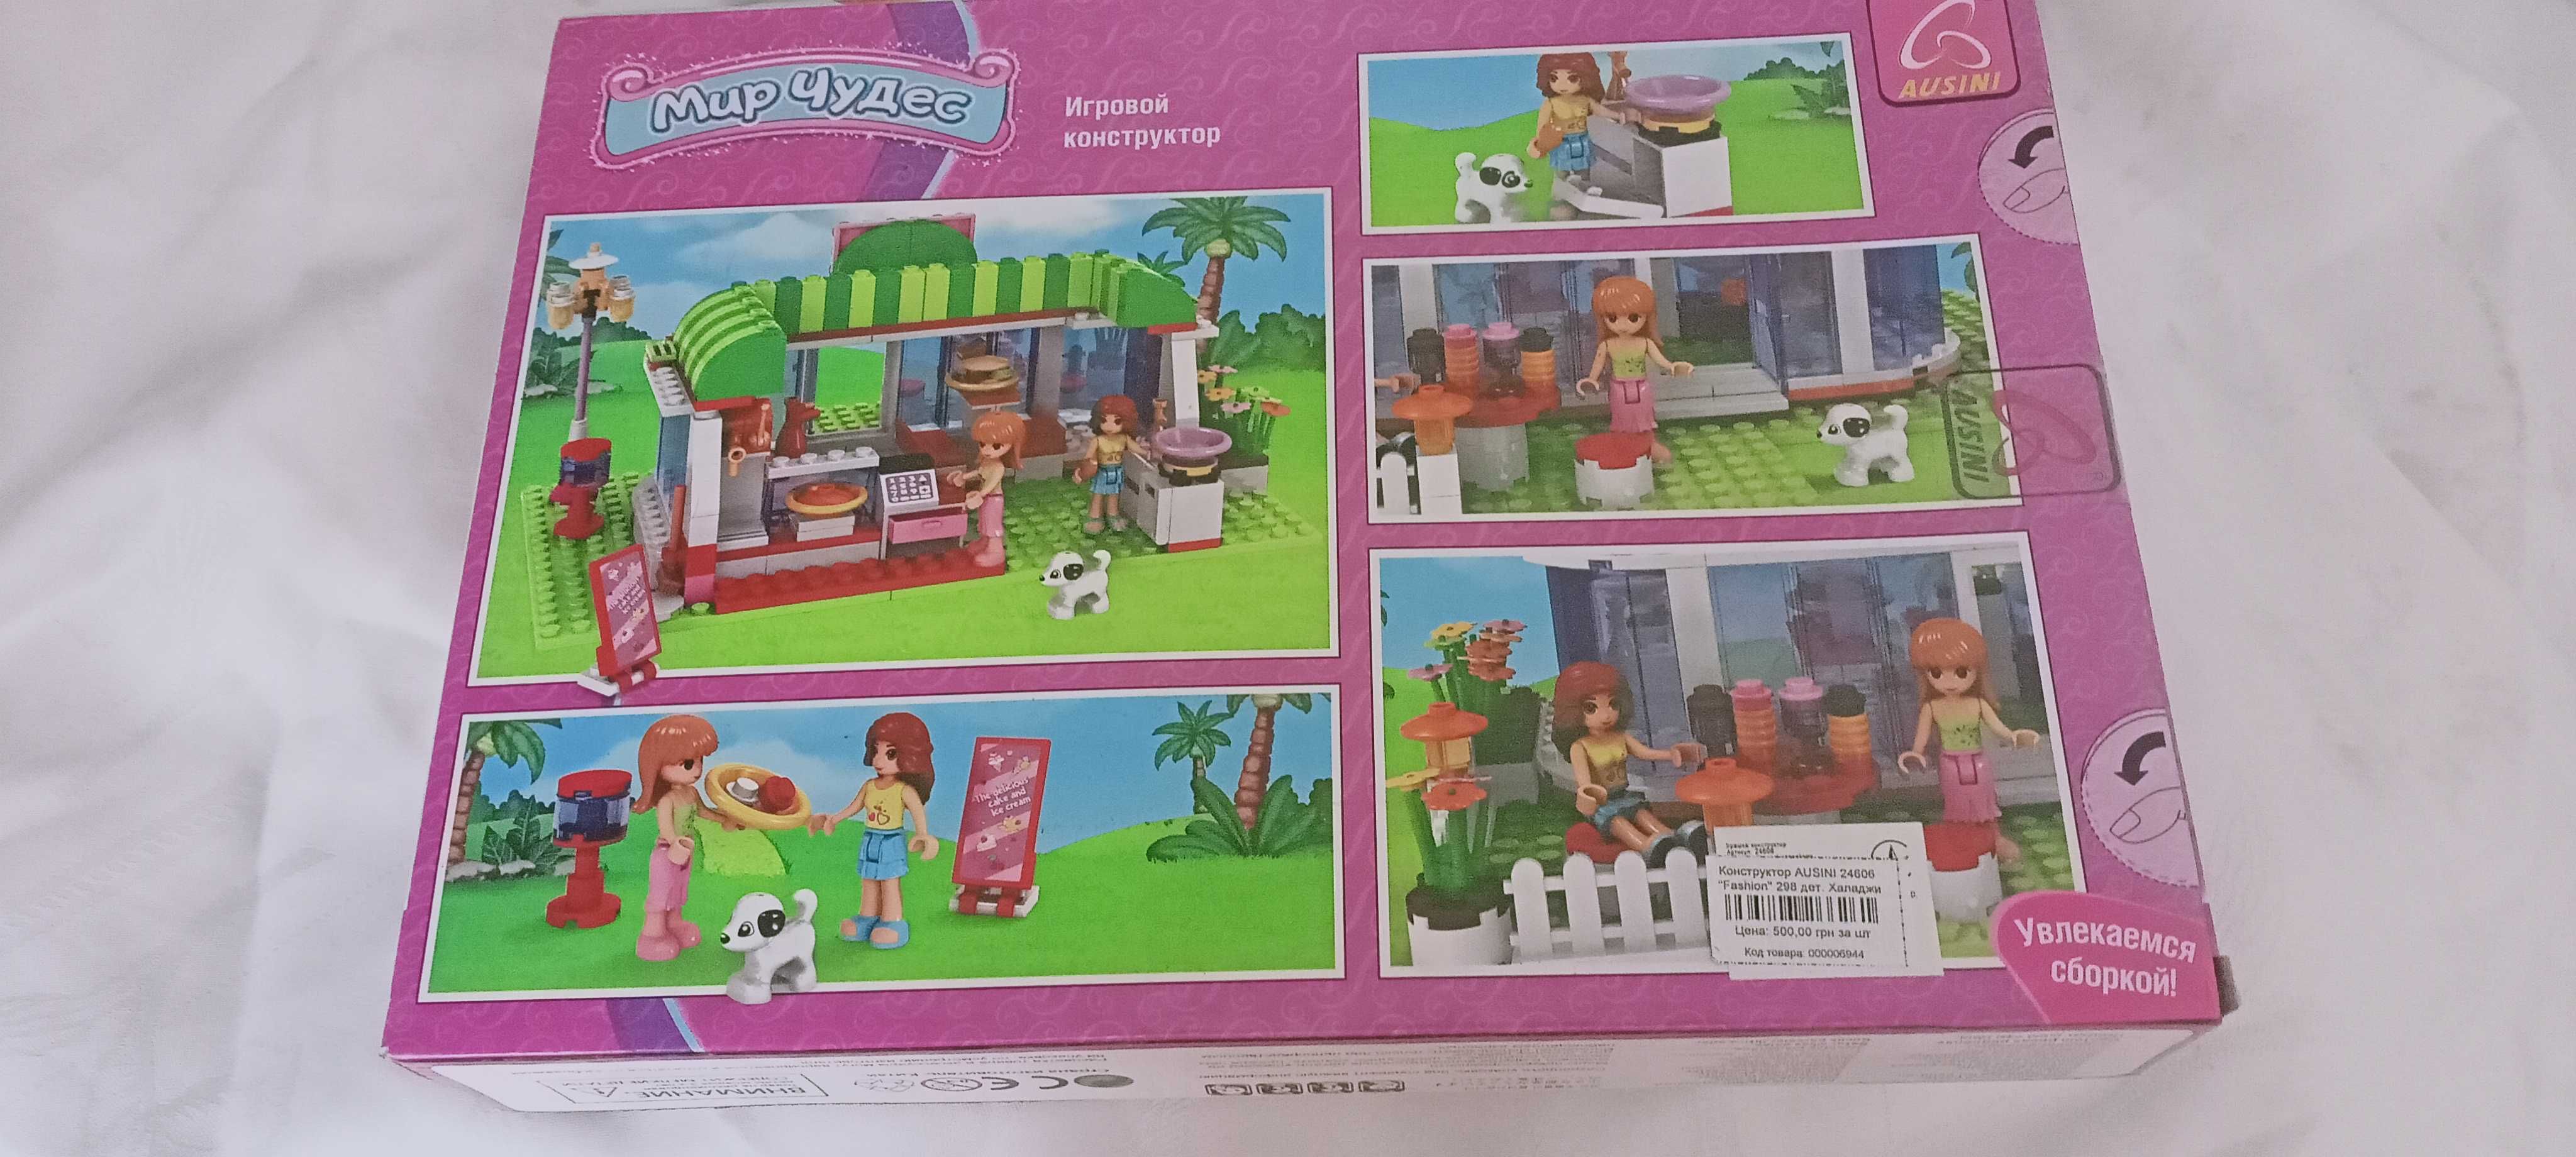 Lego dla dziewczynek. Bardzo fajne dla prezentu.